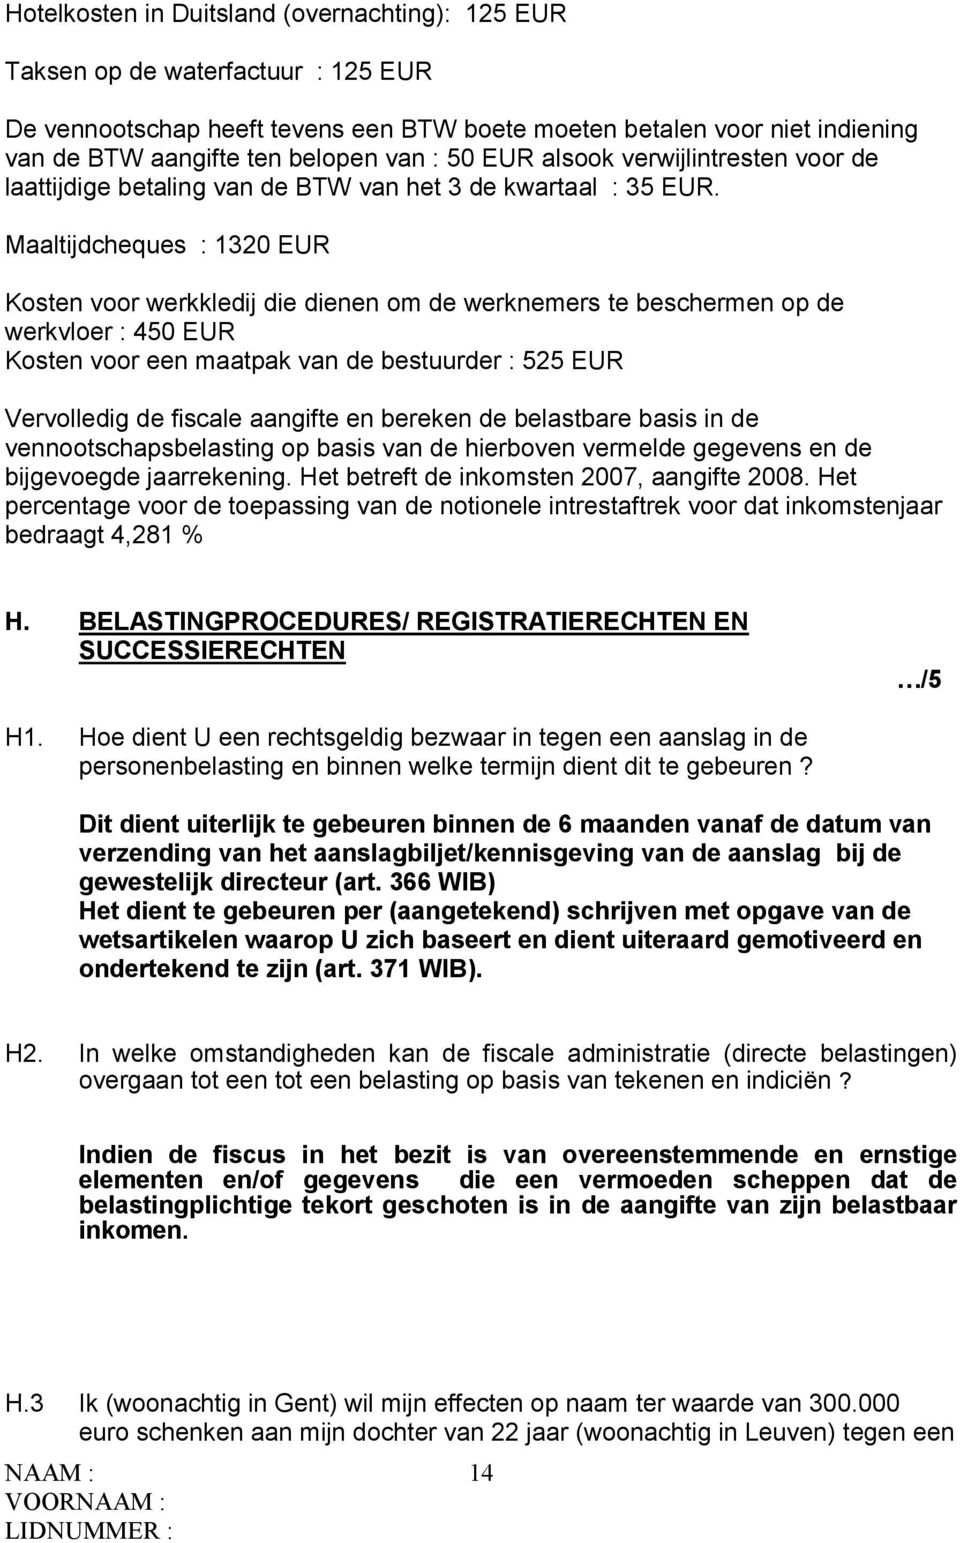 Maaltijdcheques : 1320 EUR Kosten voor werkkledij die dienen om de werknemers te beschermen op de werkvloer : 450 EUR Kosten voor een maatpak van de bestuurder : 525 EUR Vervolledig de fiscale